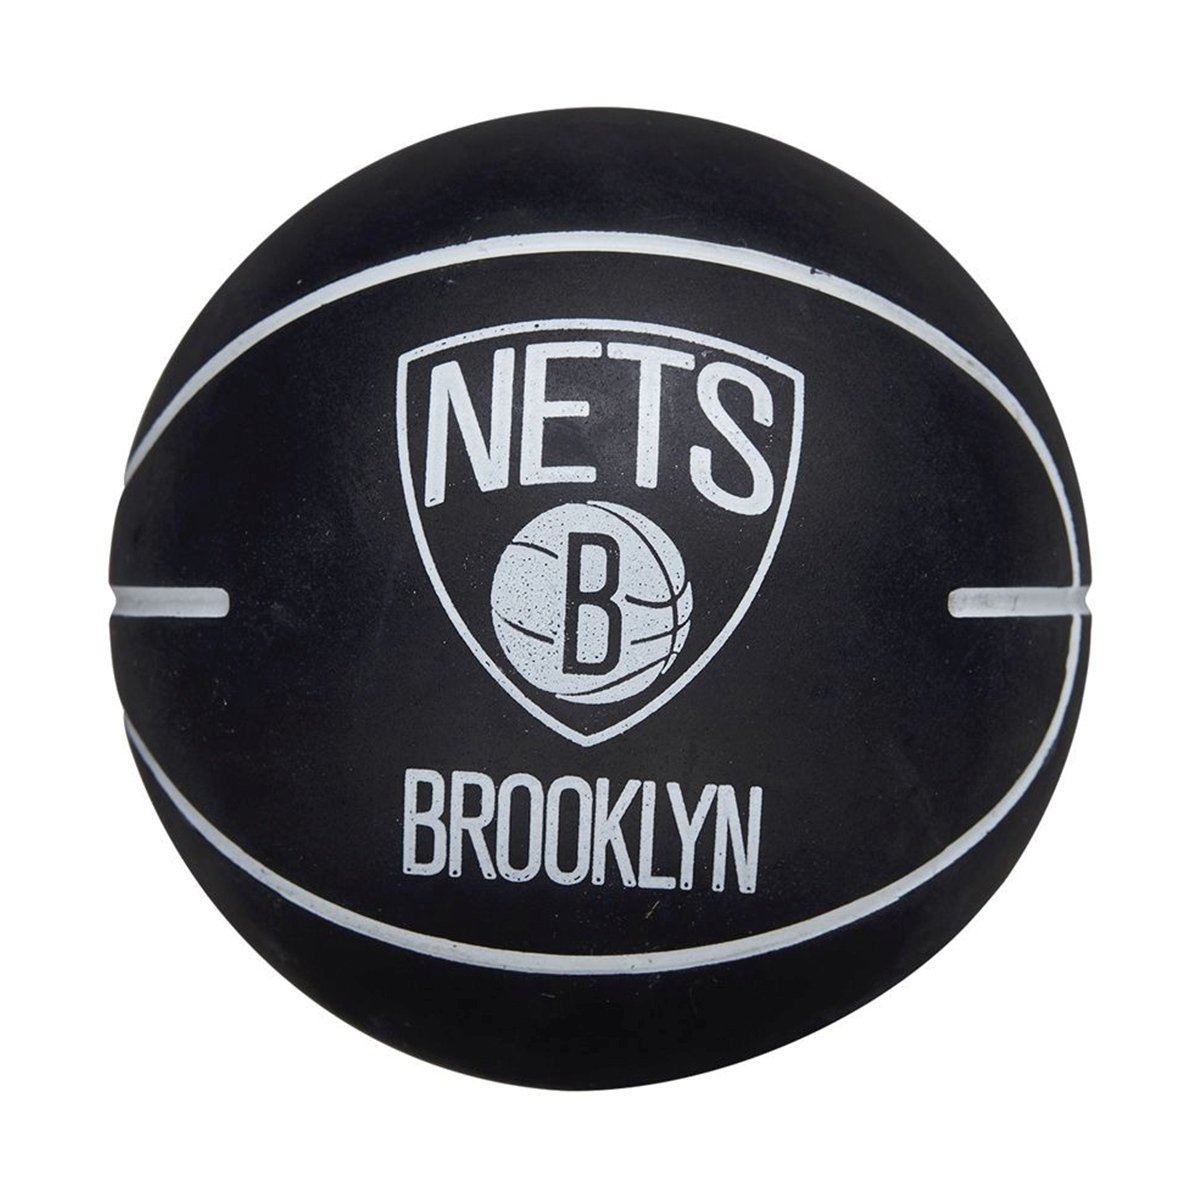 Lopta Wilson NBA Dribbler Bskt Bro Nets - čierna